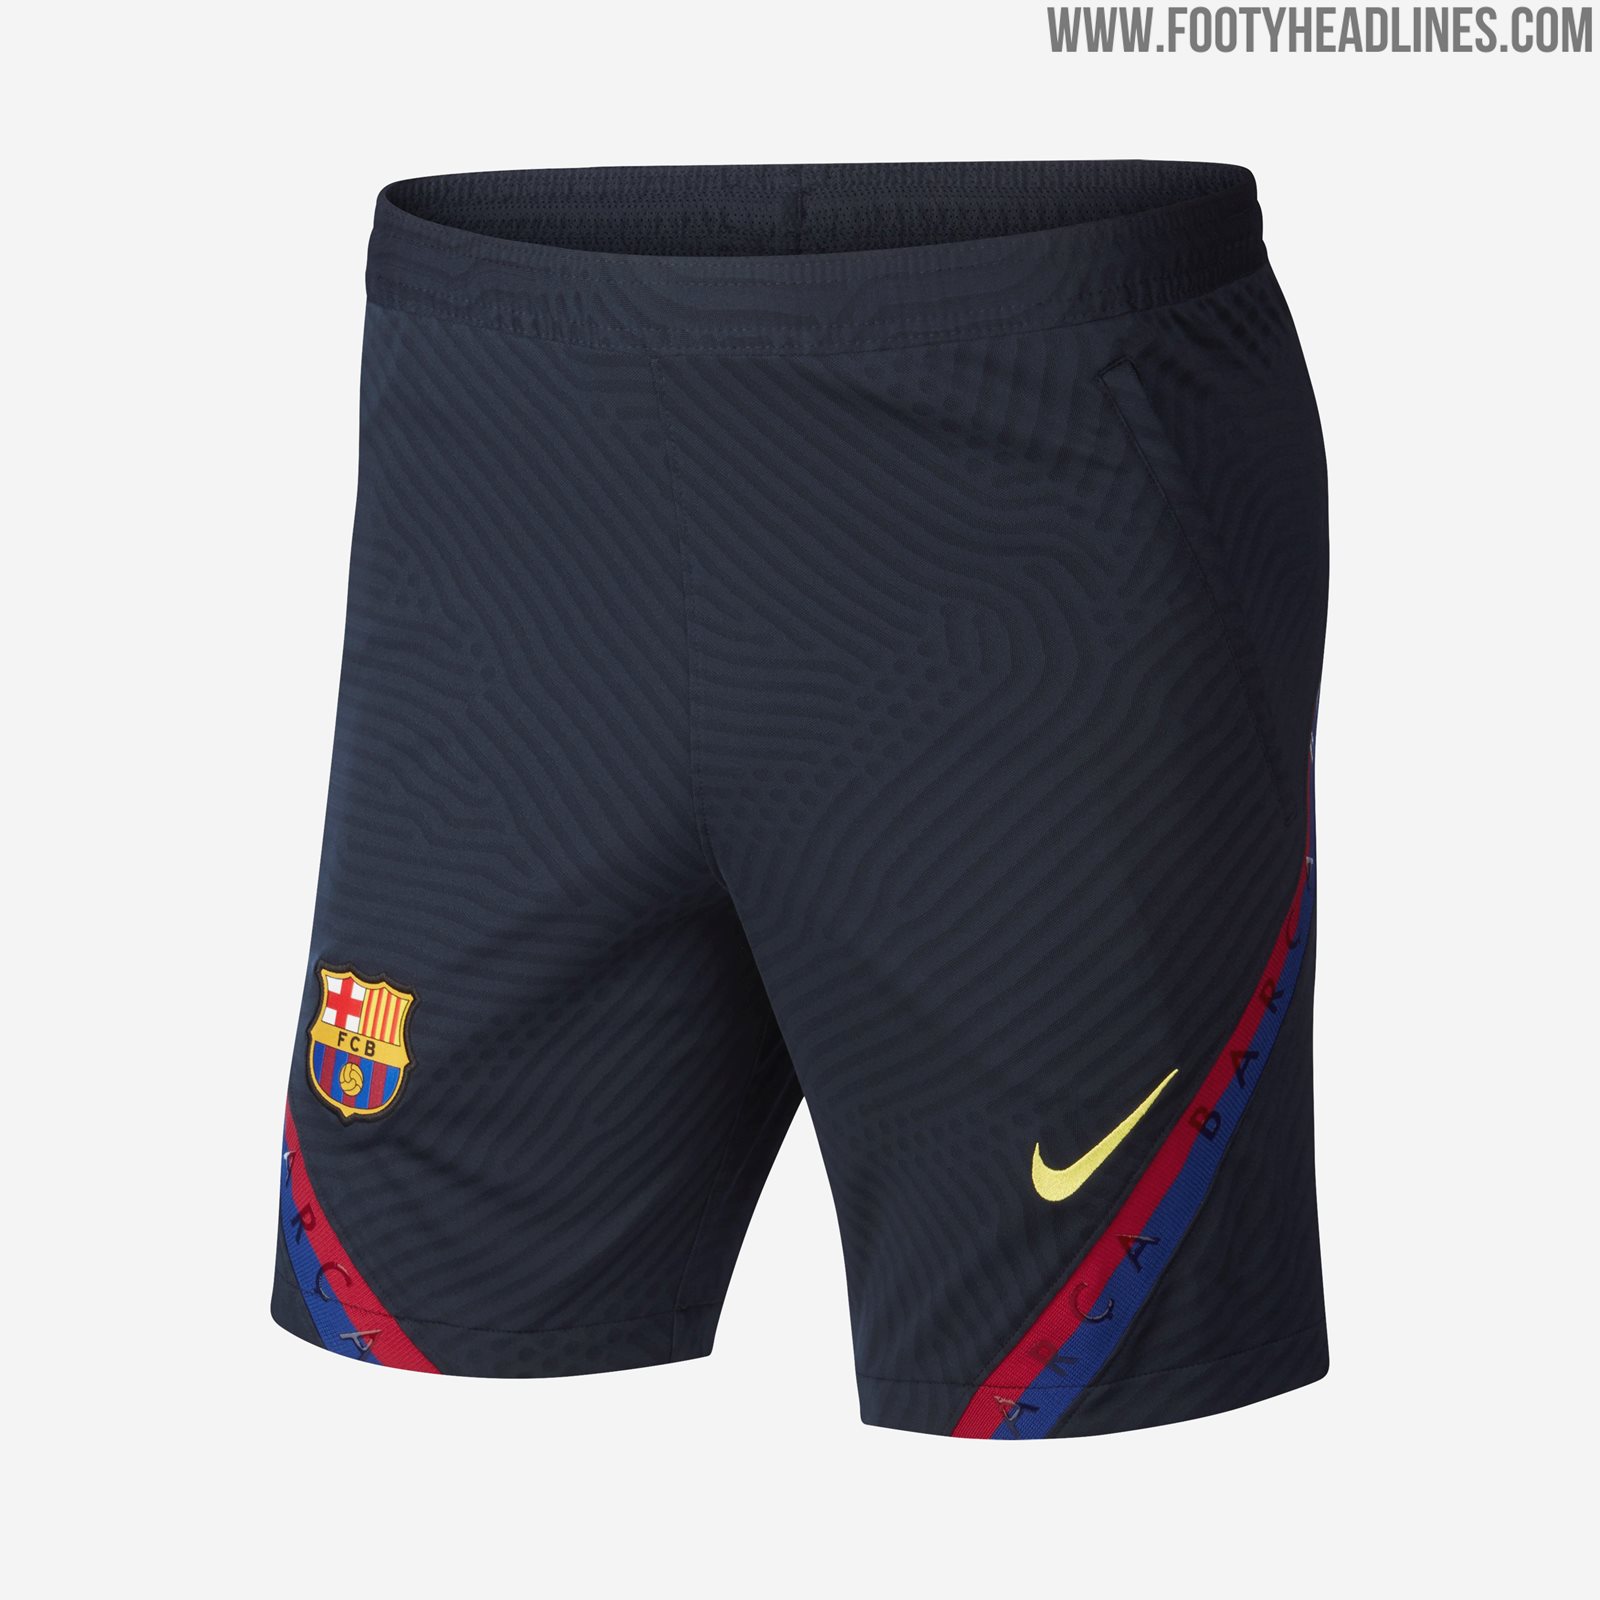 NextGen VaporKnit: FC Barcelona 2020 Training Kit Released - Footy ...